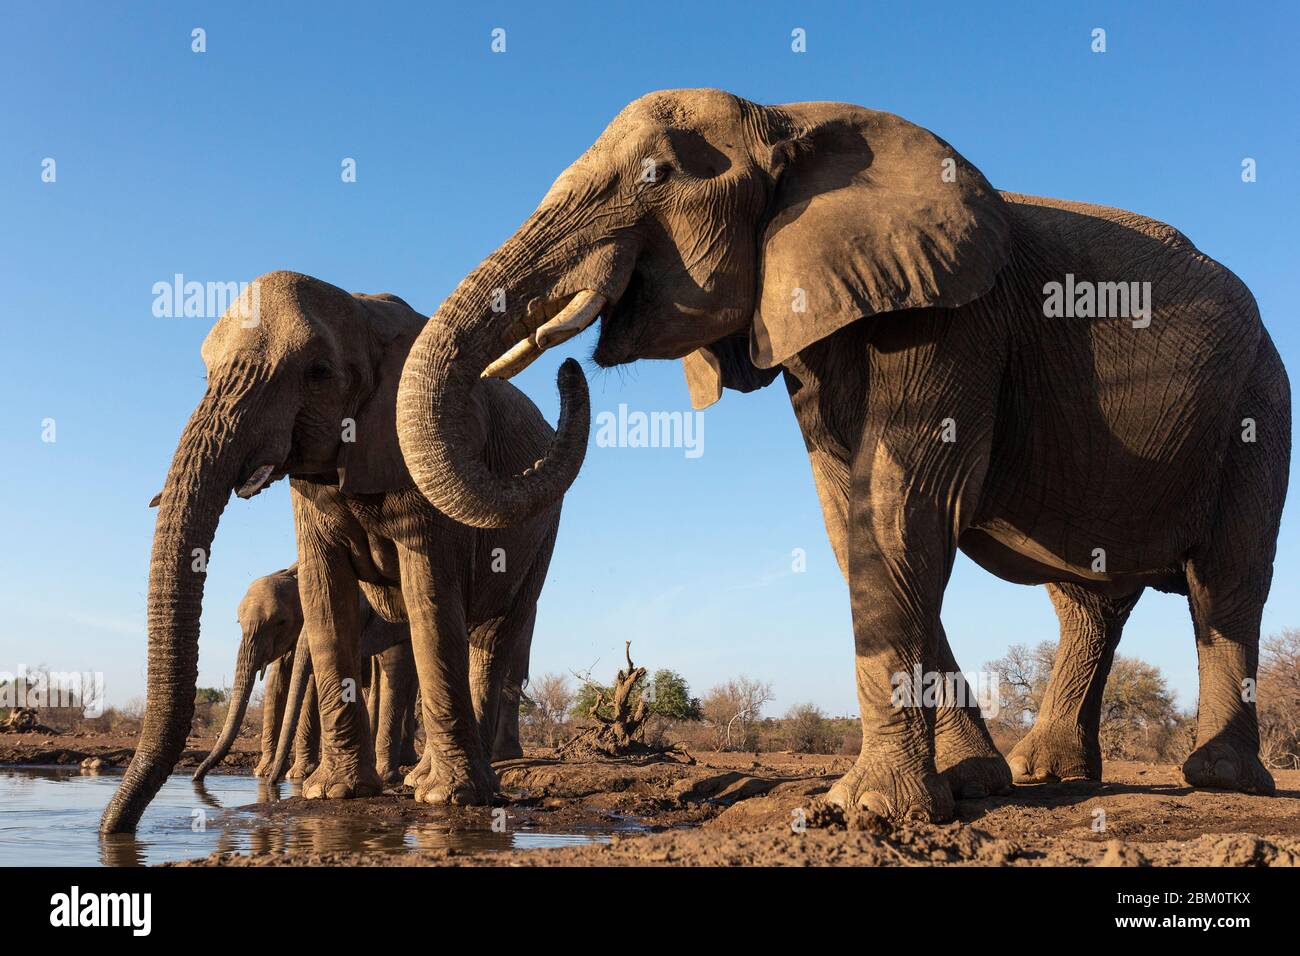 Elephants (Loxodonta africana) at water, Mashatu game reserve, Botswana Stock Photo